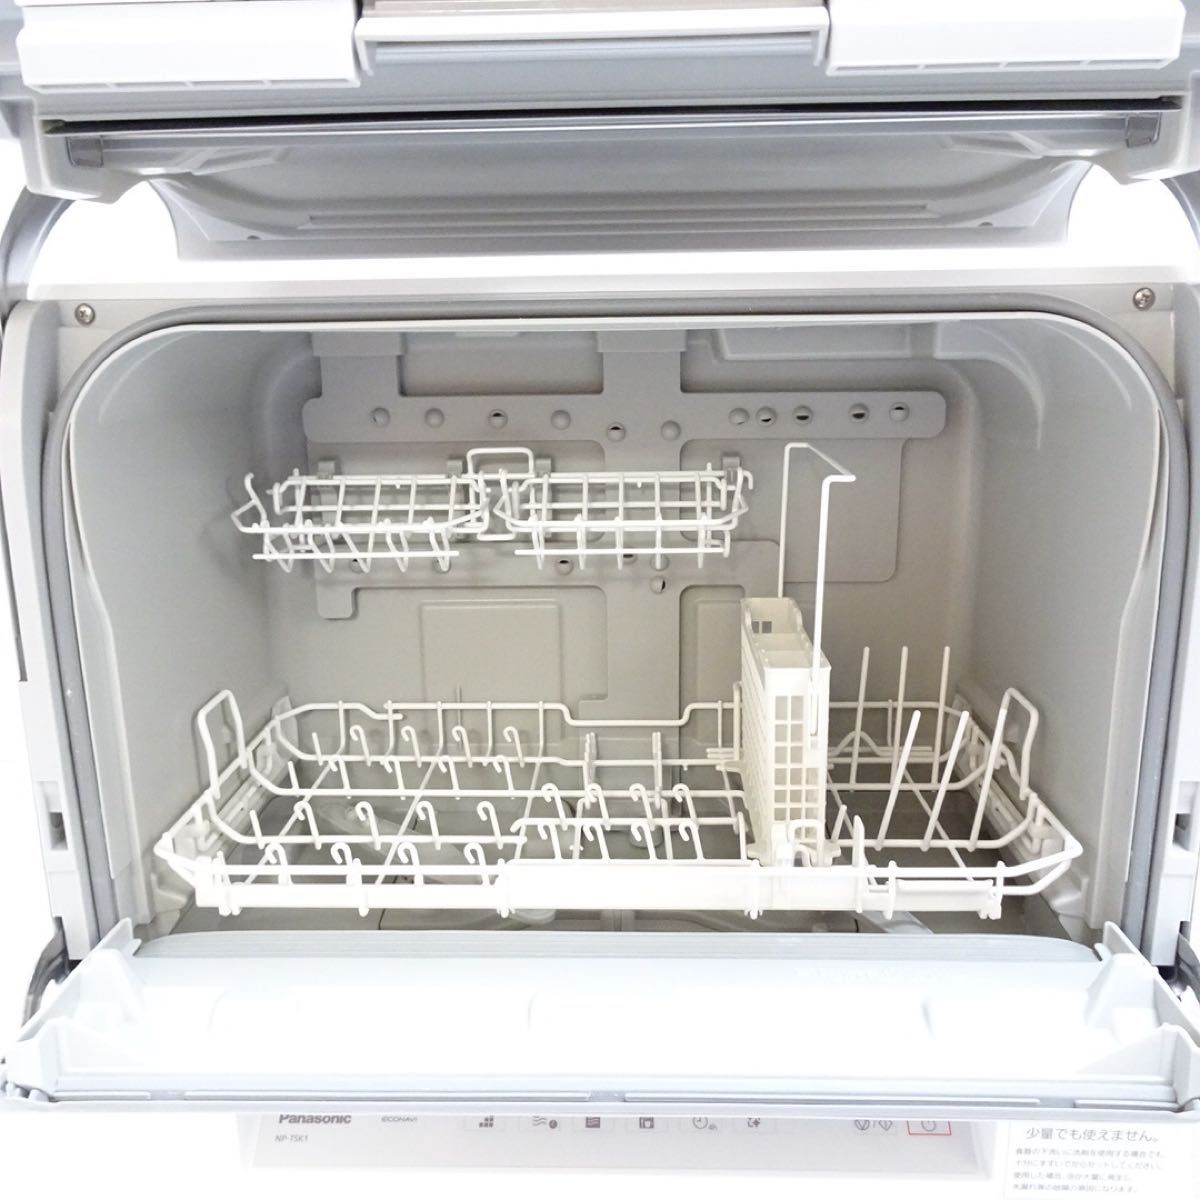 【2021年製美品】パナソニック NP-TSK1-W 食器洗い乾燥機